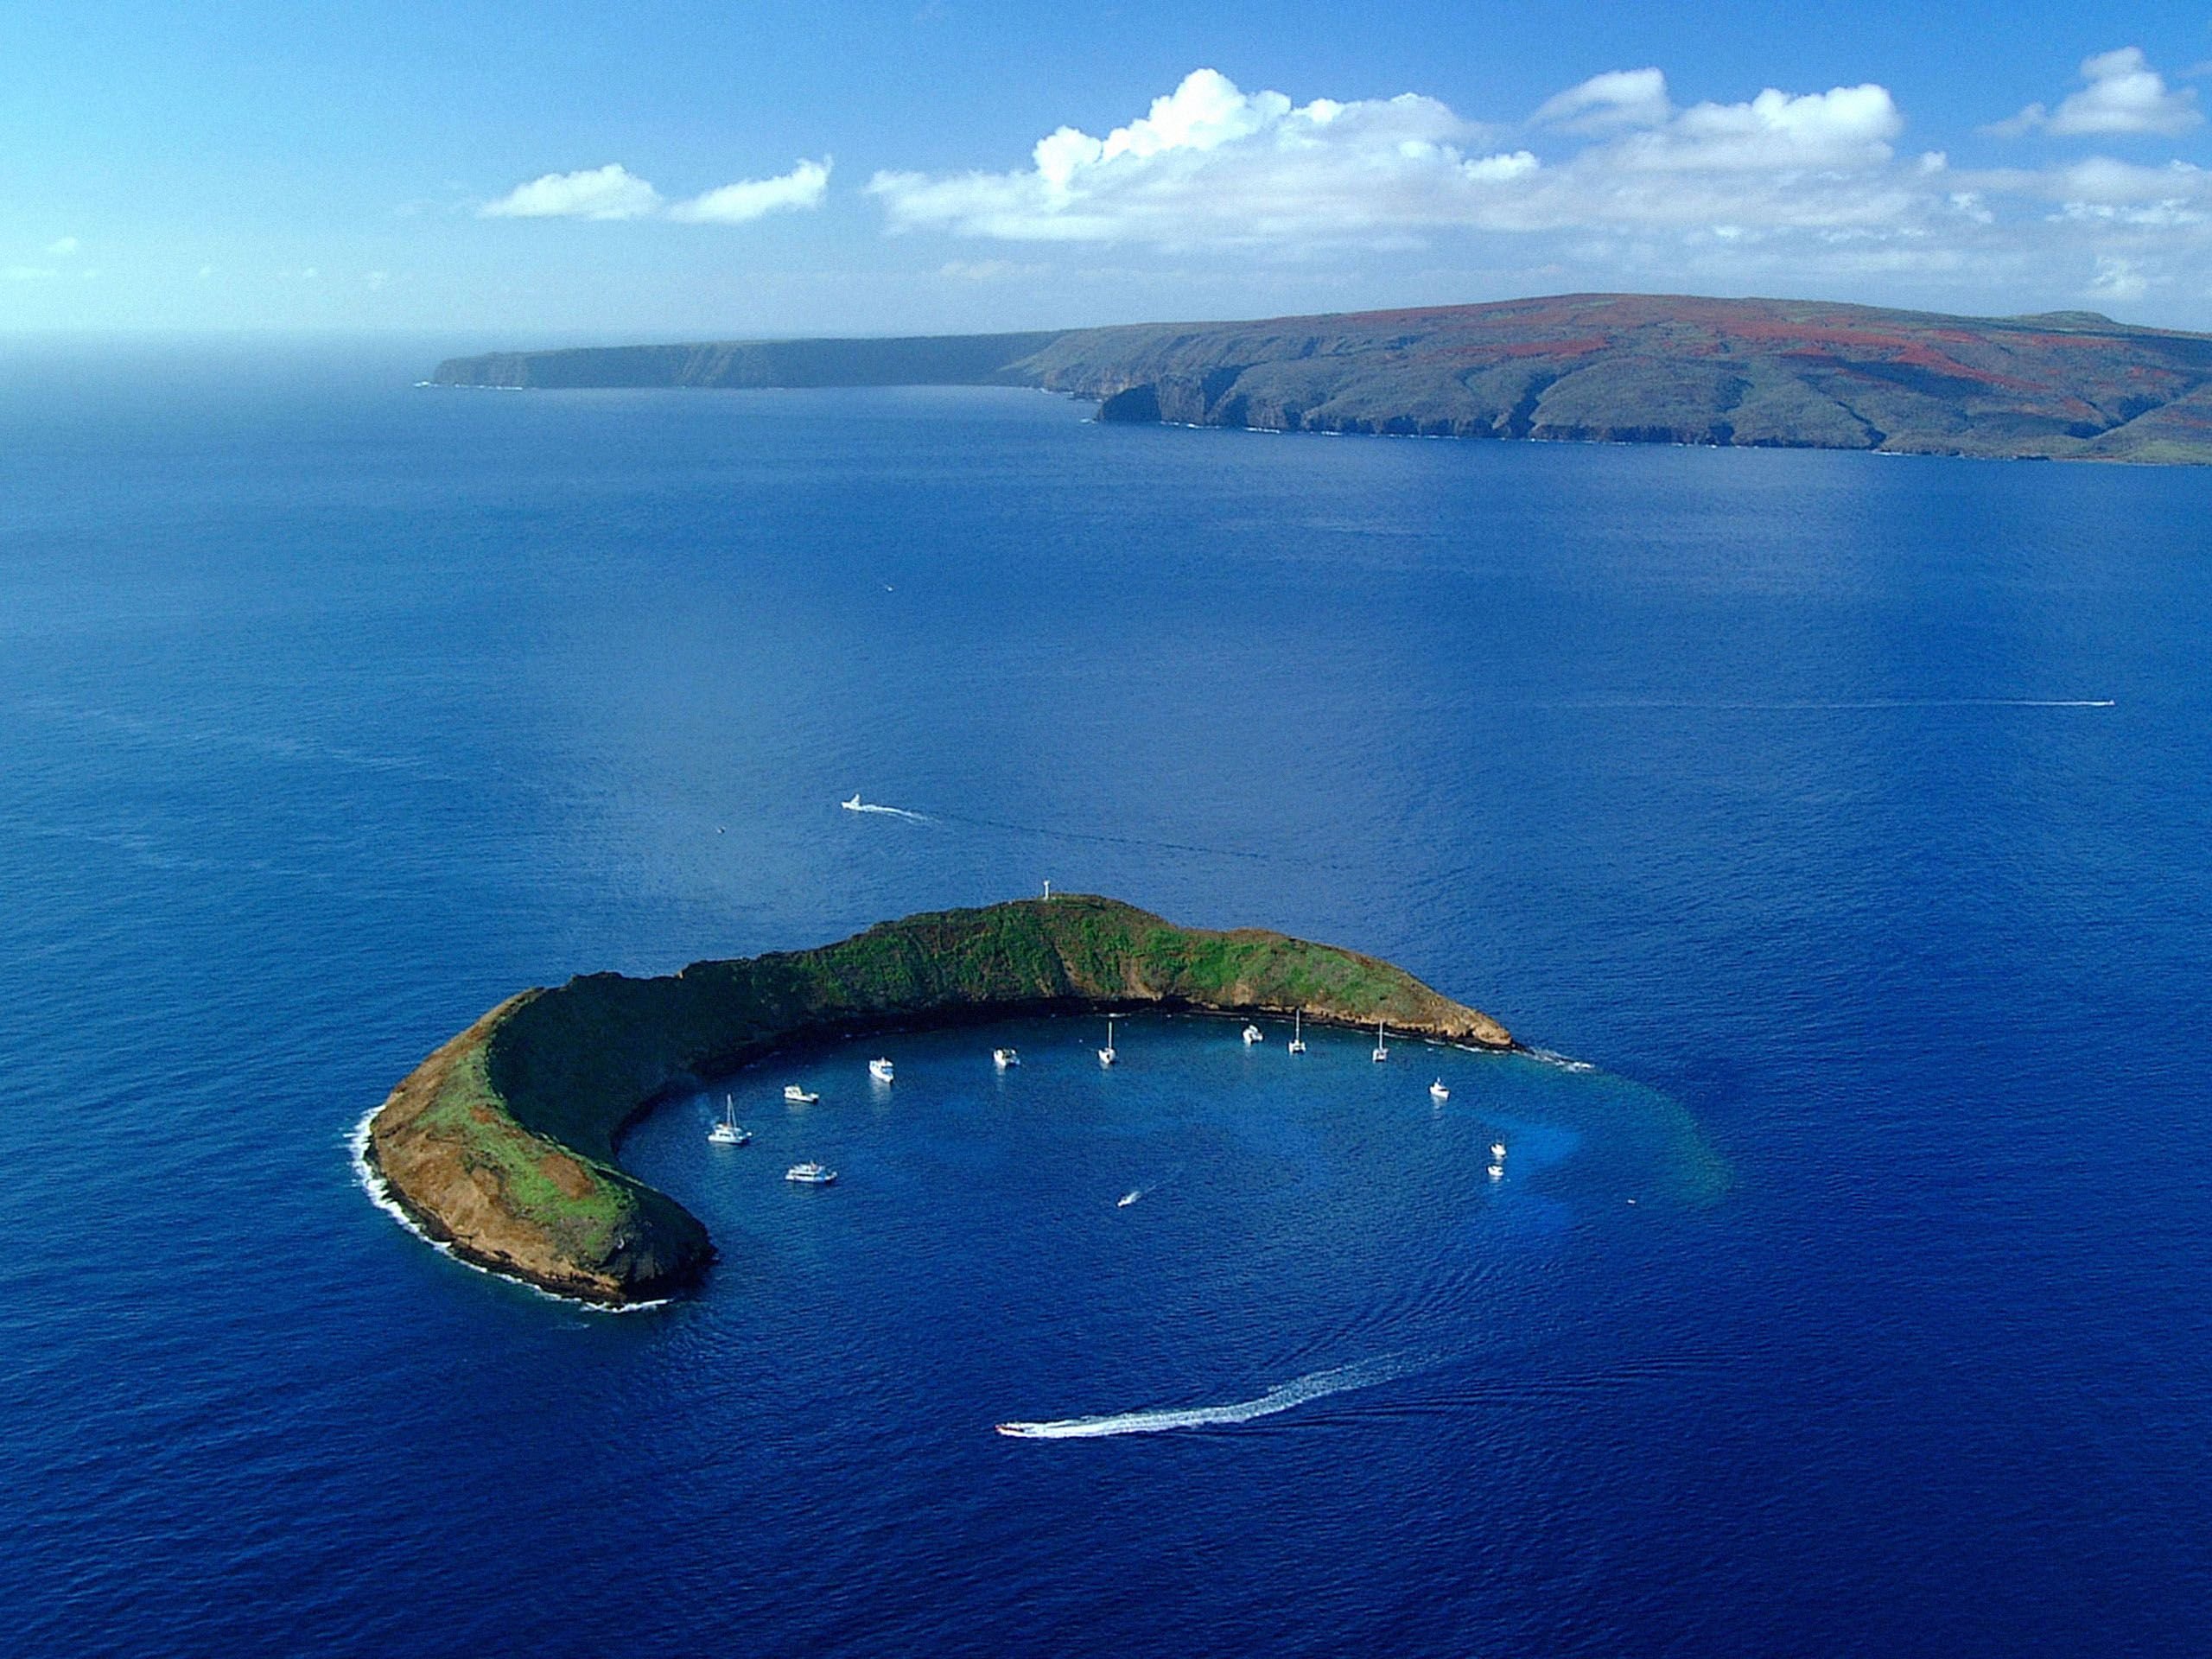 Острова южного тихого океана. Остров Молокини, Гавайи. Кратер Молокини, Гавайи. Остров Мауи Гавайи. Гавайский архипелаг остров Мауи.